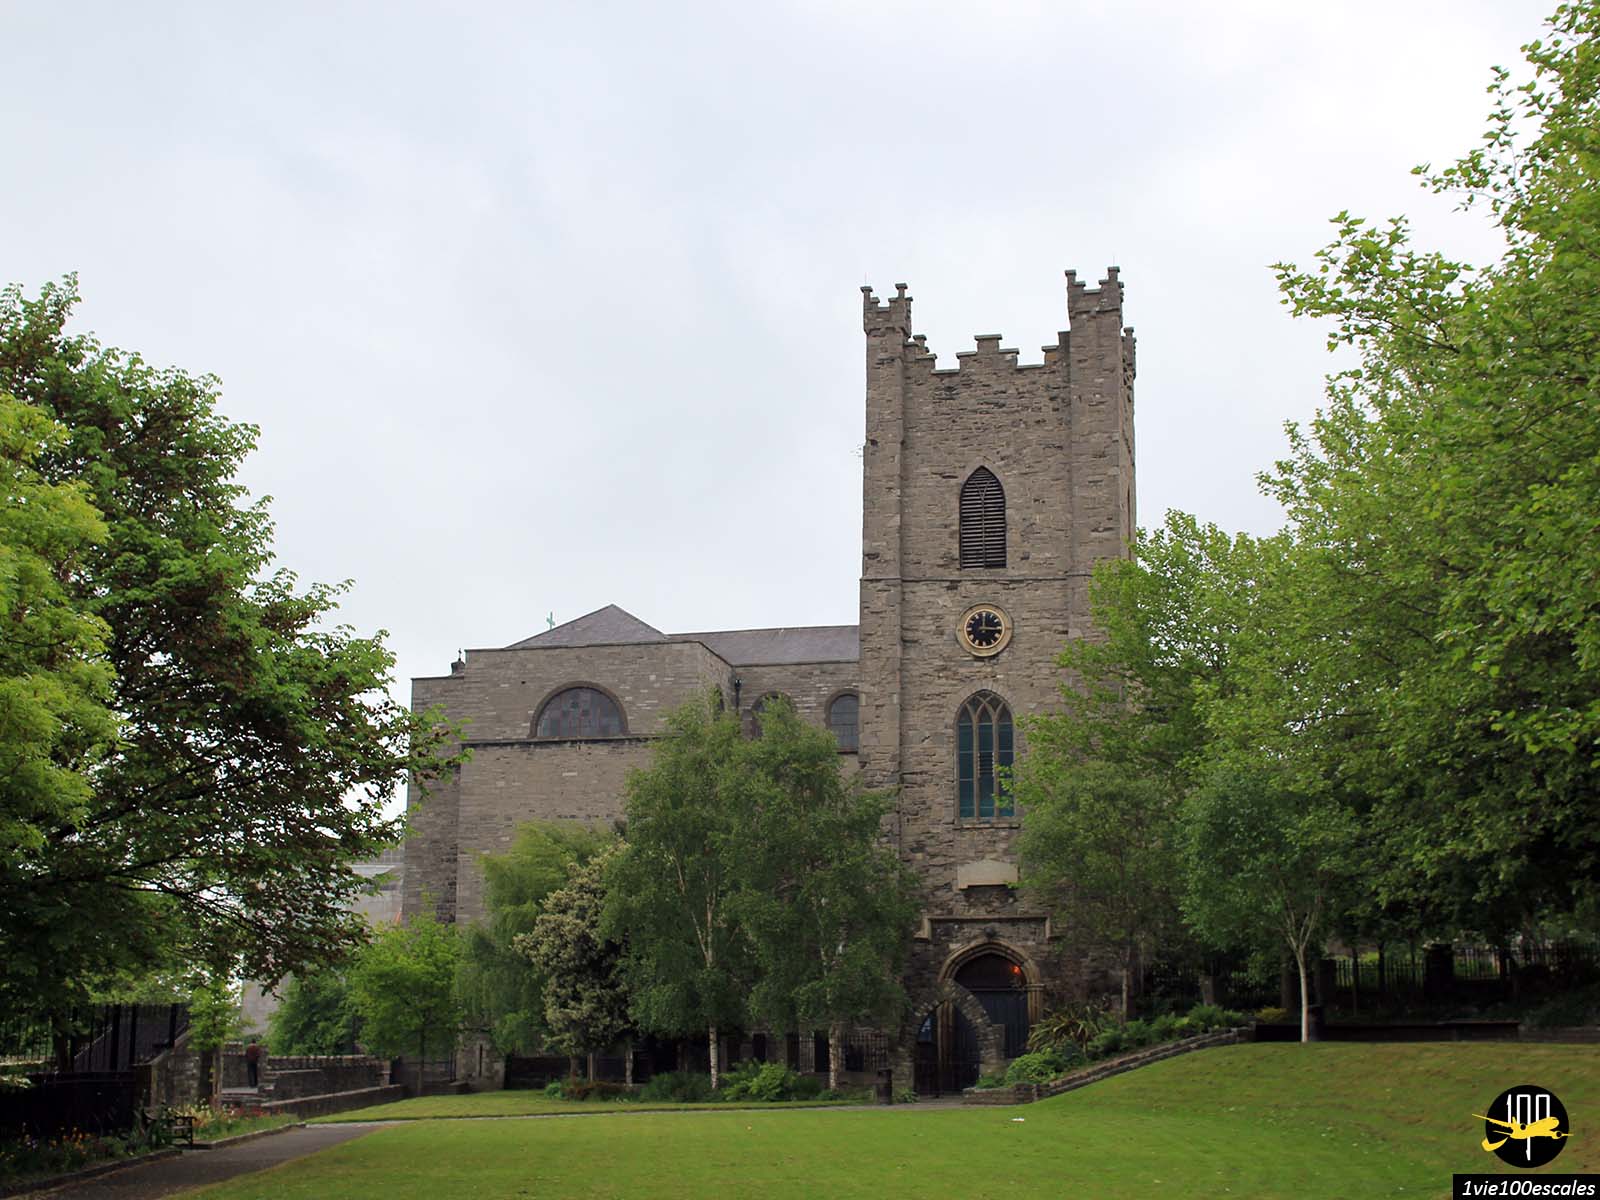 St Audoens est l'une des plus vieilles églises qui soient toujours debout a Dublin. C'est une église normande dédiée a Saint Ouen, qui fut construite ici